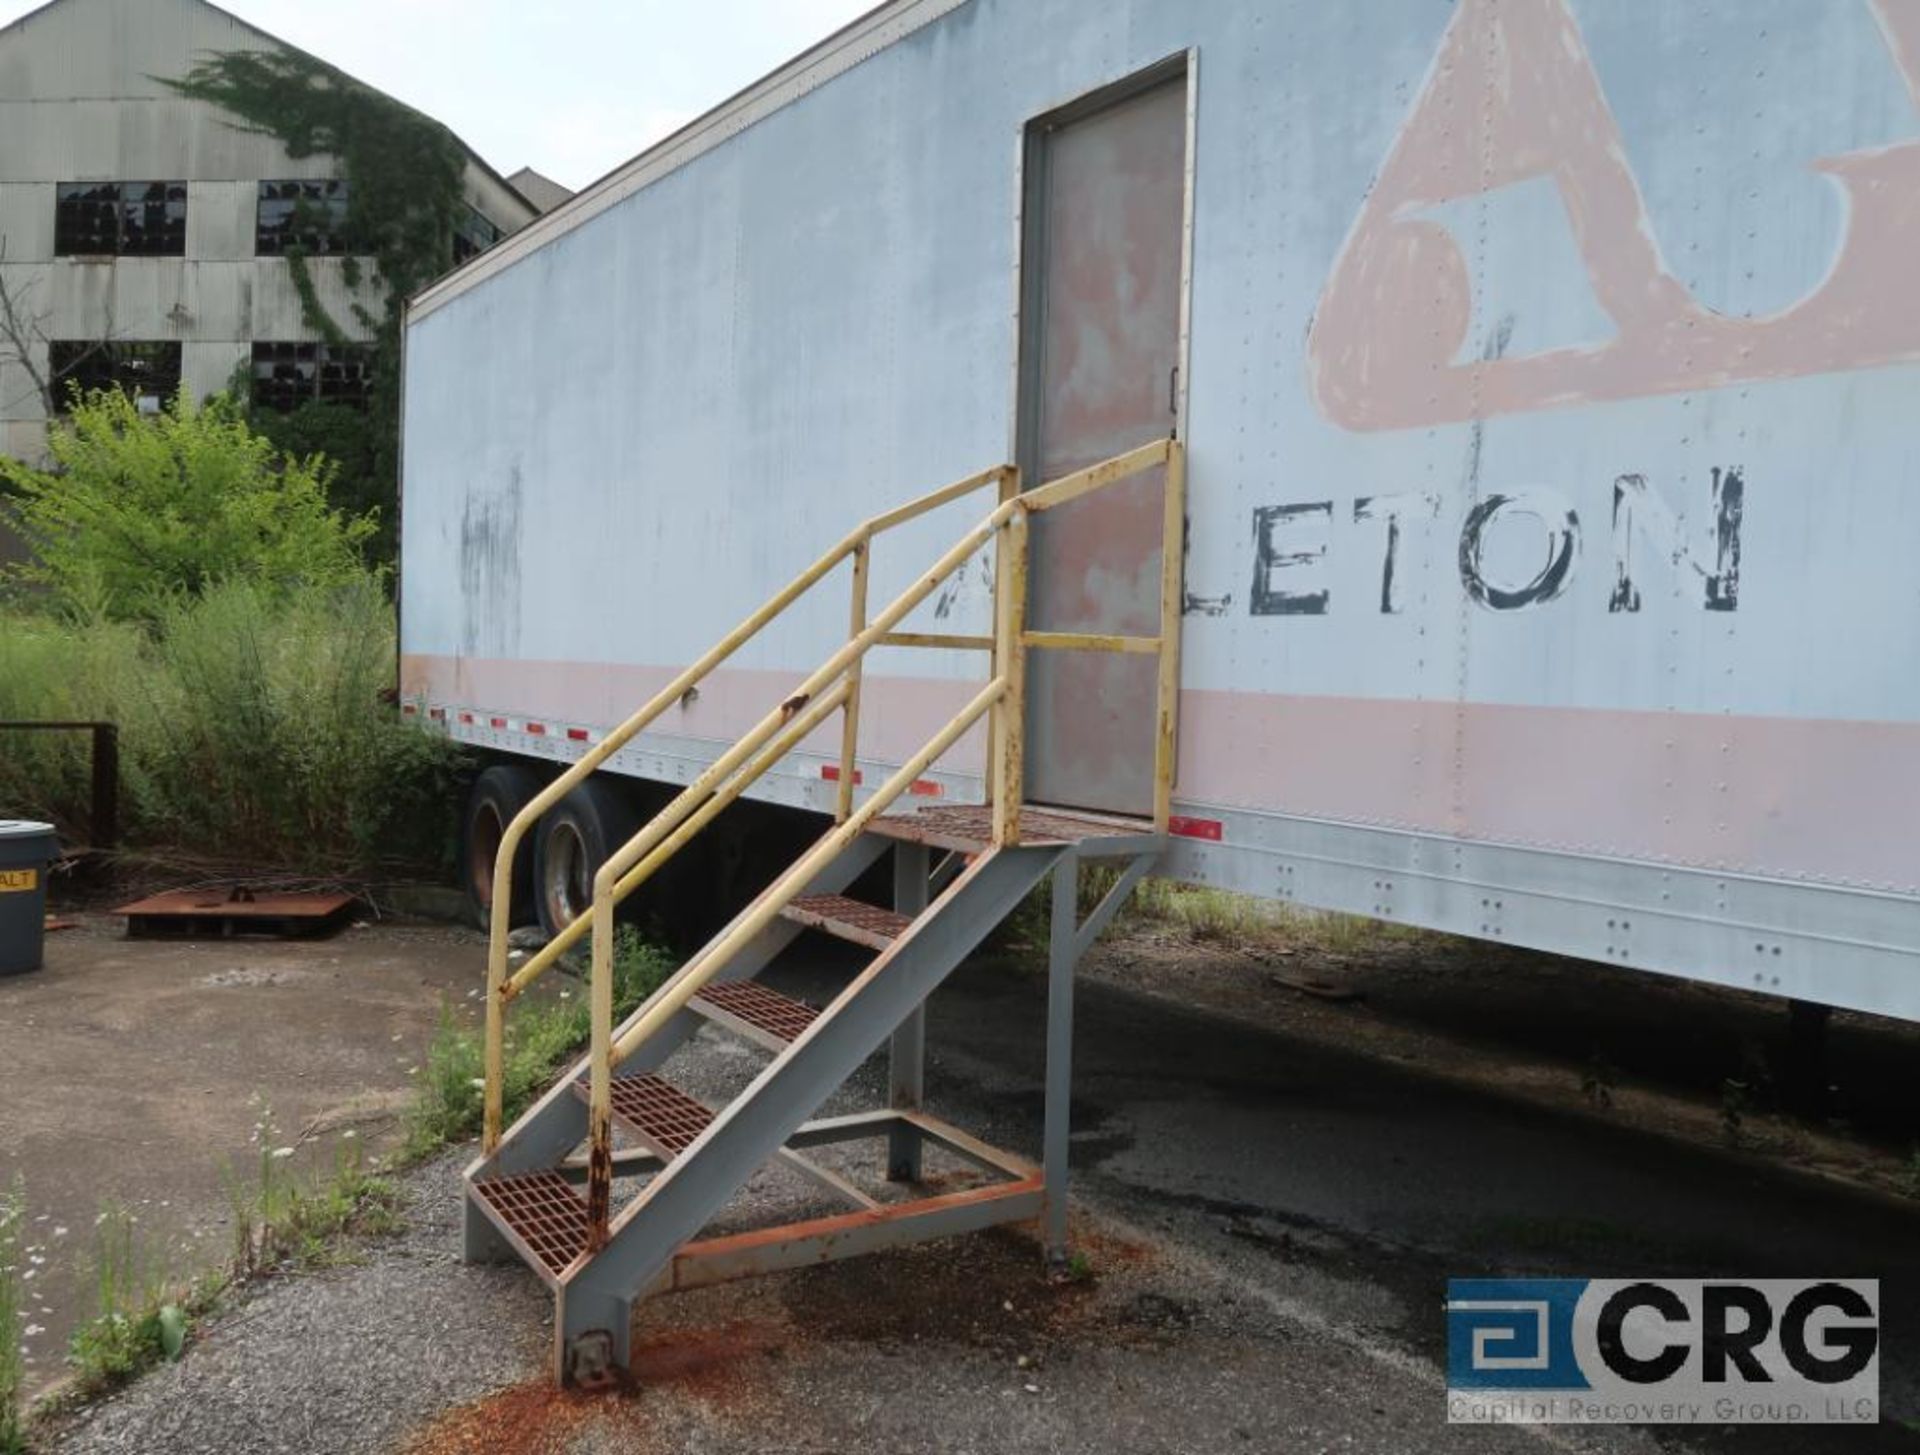 Fruehauf dry van trailer, 45 ft., VIN #1H2V04824KH011002, Trailer #30-B (Lower Wood Yard) - Image 2 of 3